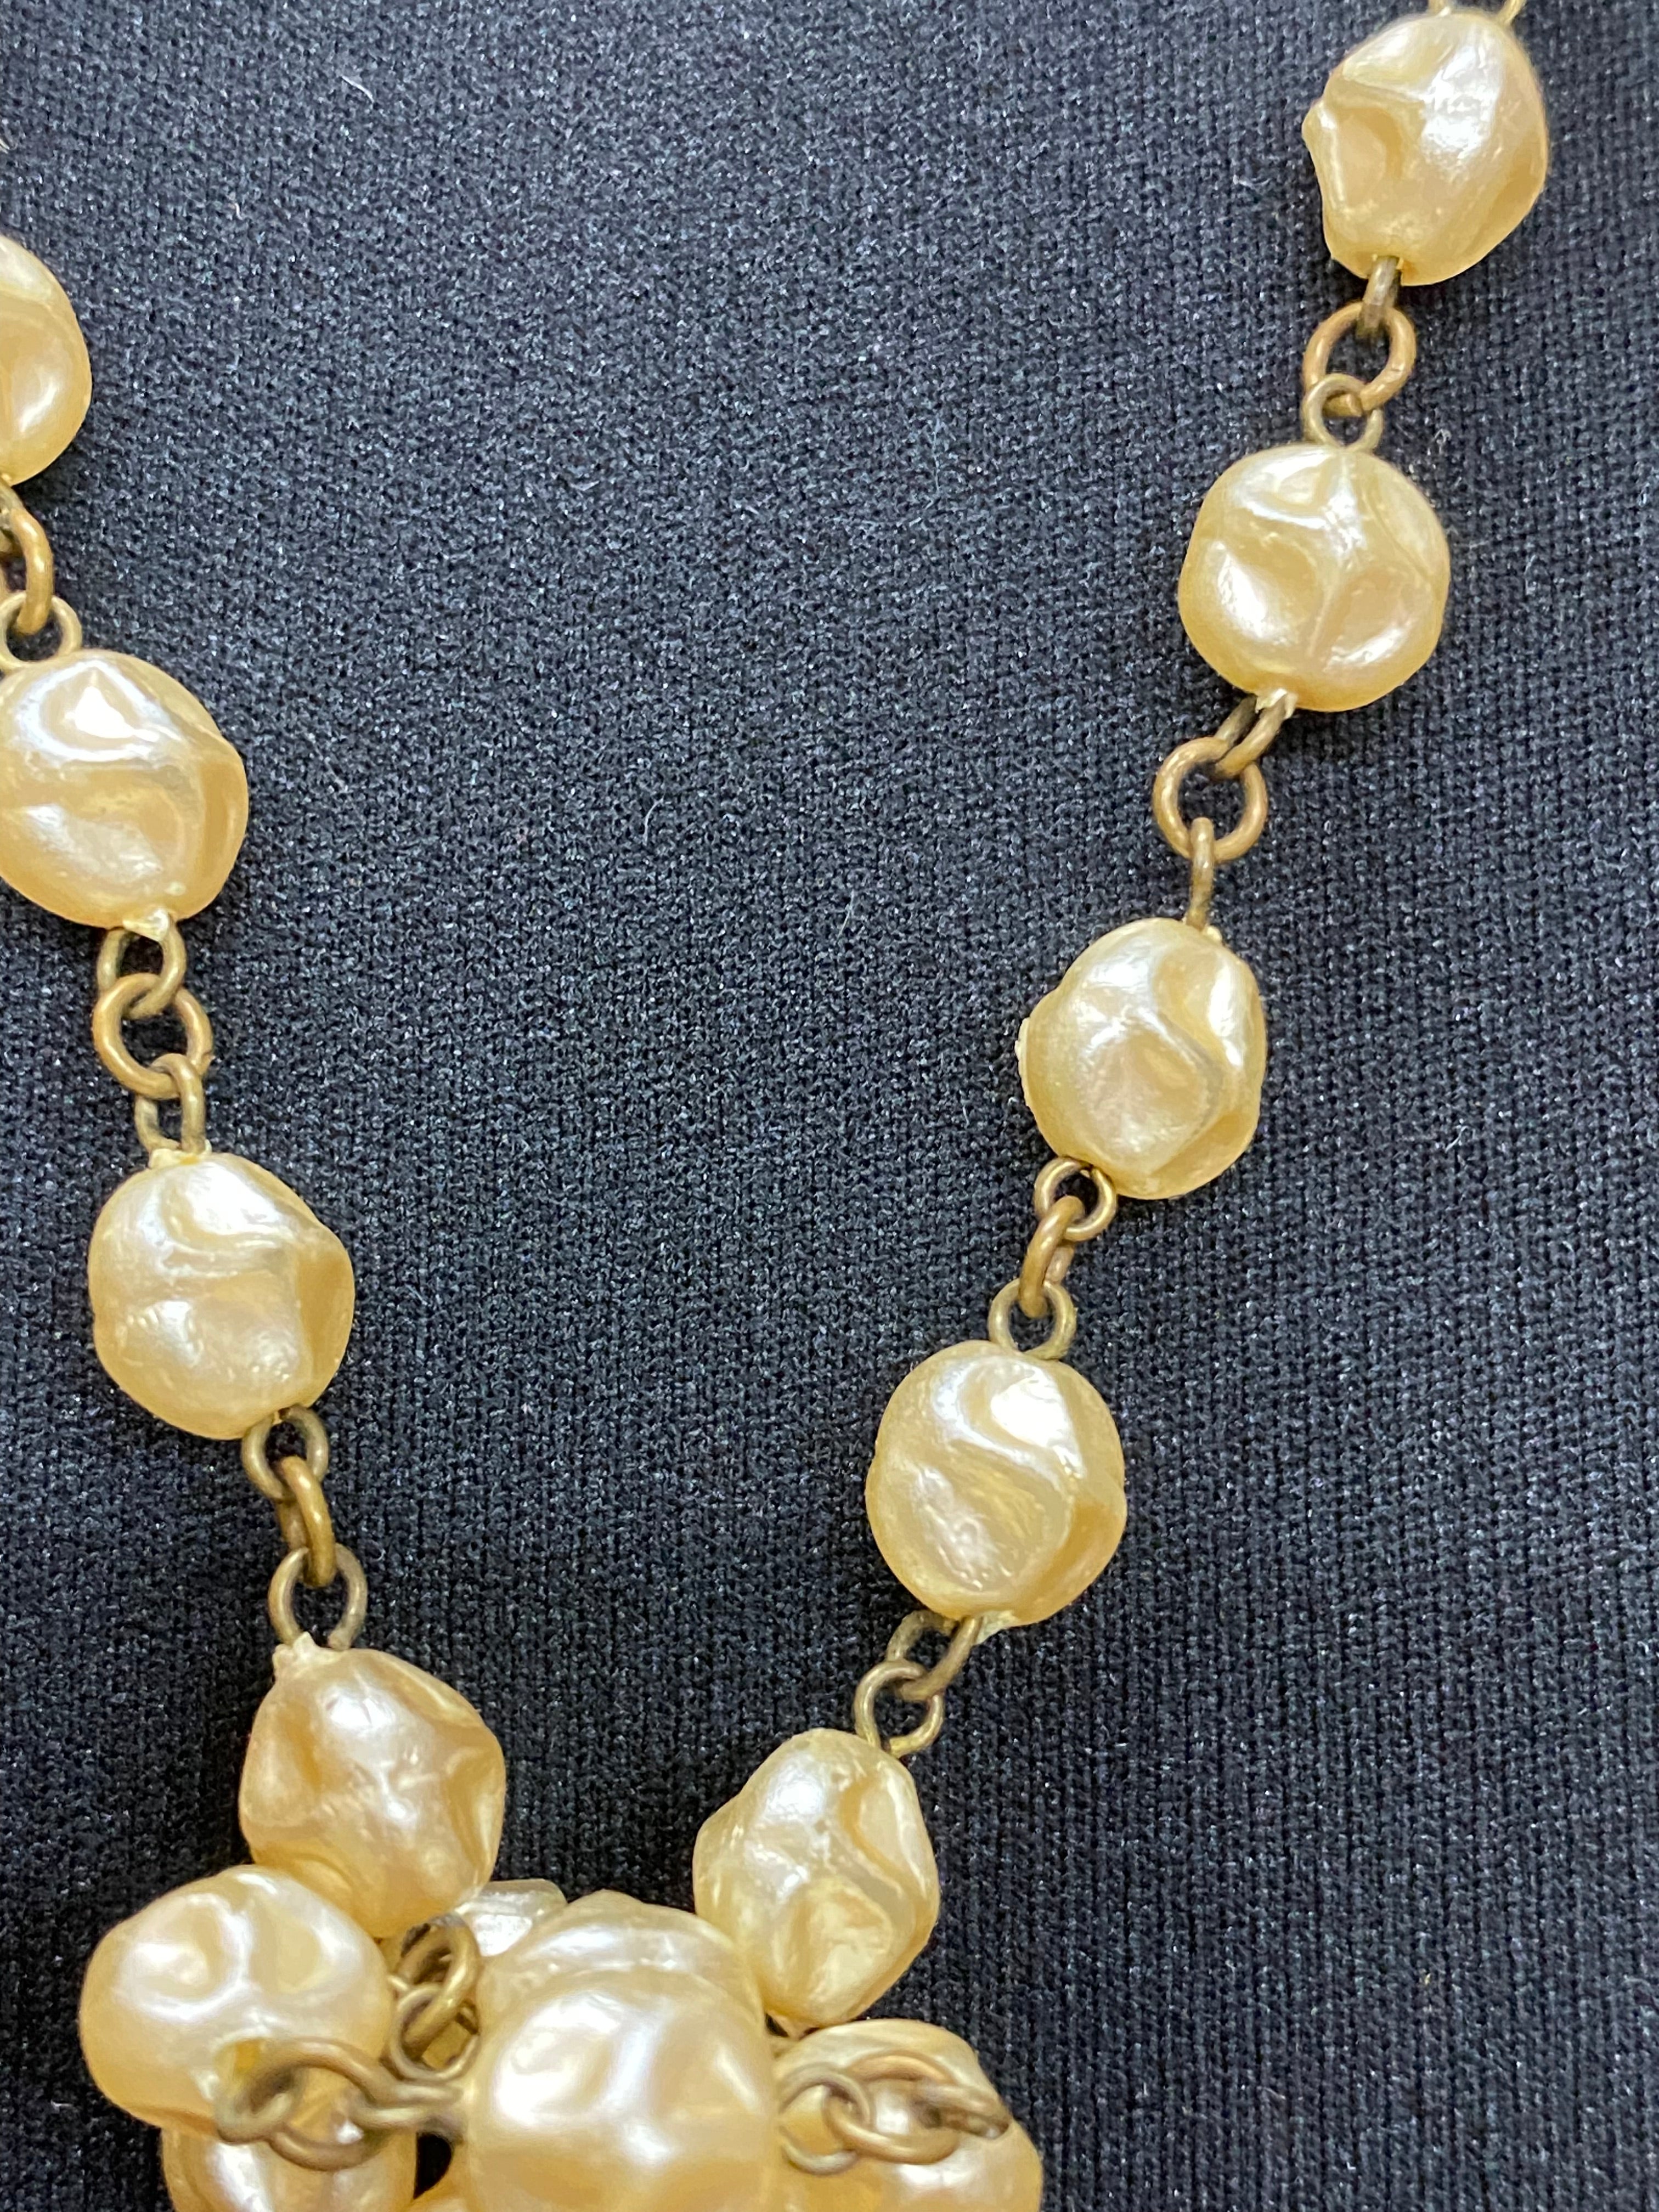 3teiliges Set 20er Jahre Stil, Abendtasche, Kopfschmuck und lange Perlenkette, Unikat